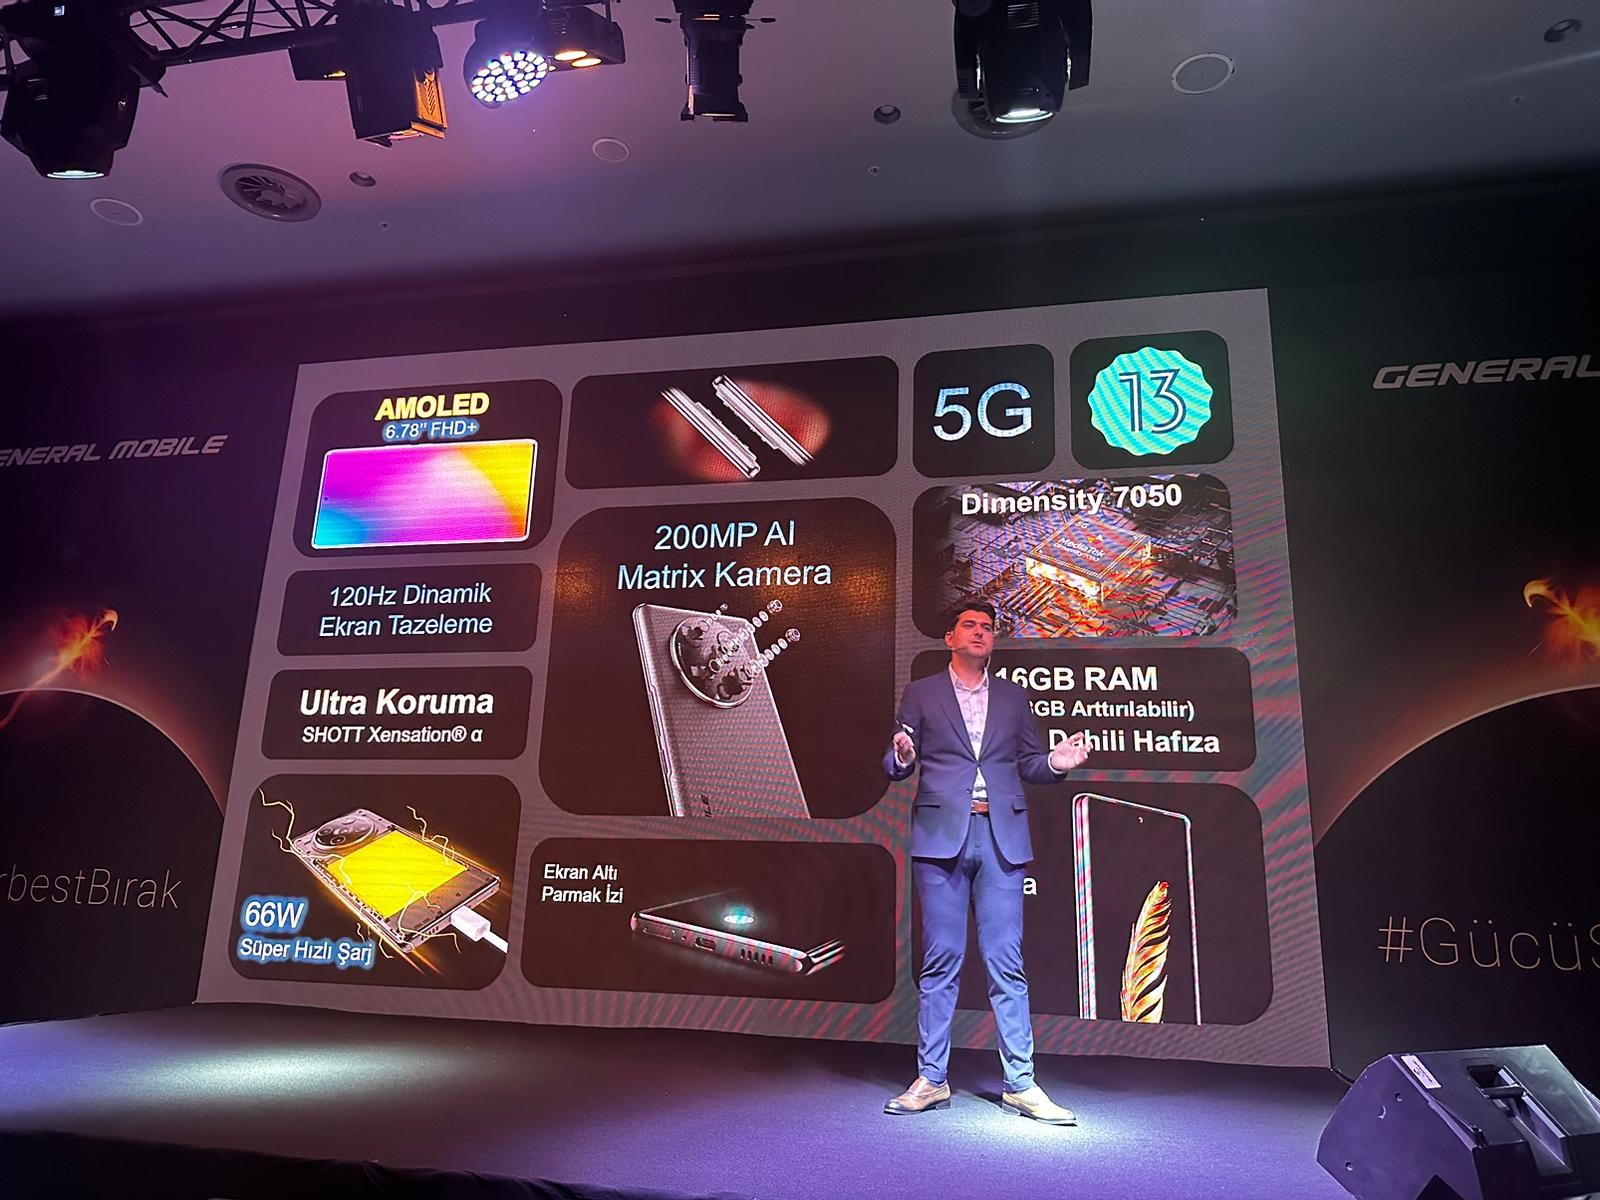 General Mobile Phoenix 5G tanıtıldı: İşte özellikleri ve fiyatı